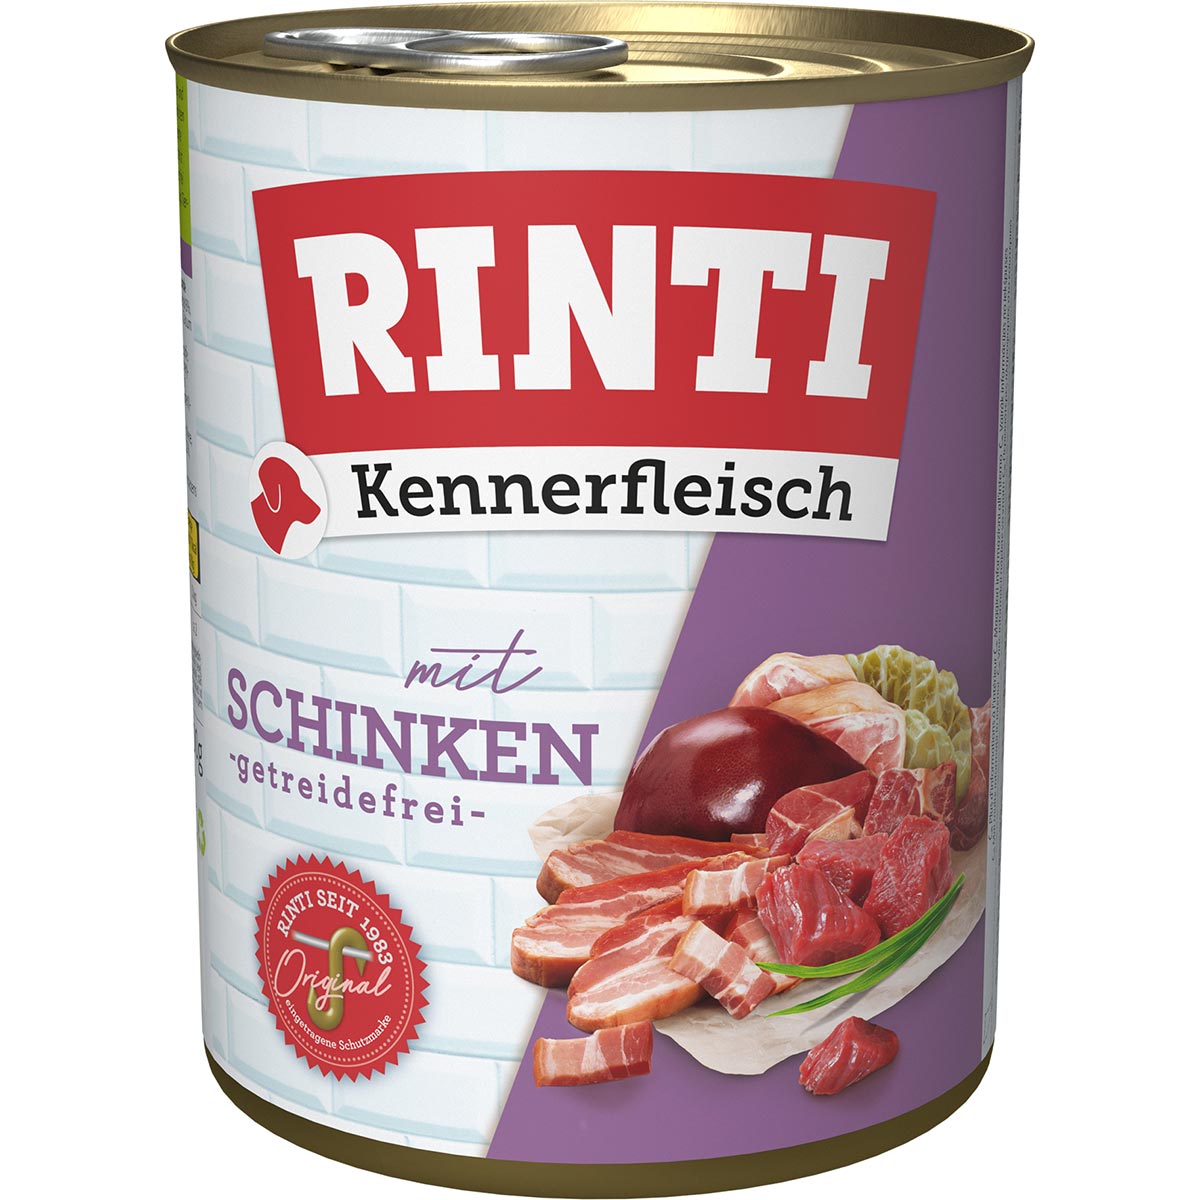 Rinti Kennerfleisch Schinken 24x800g von Rinti